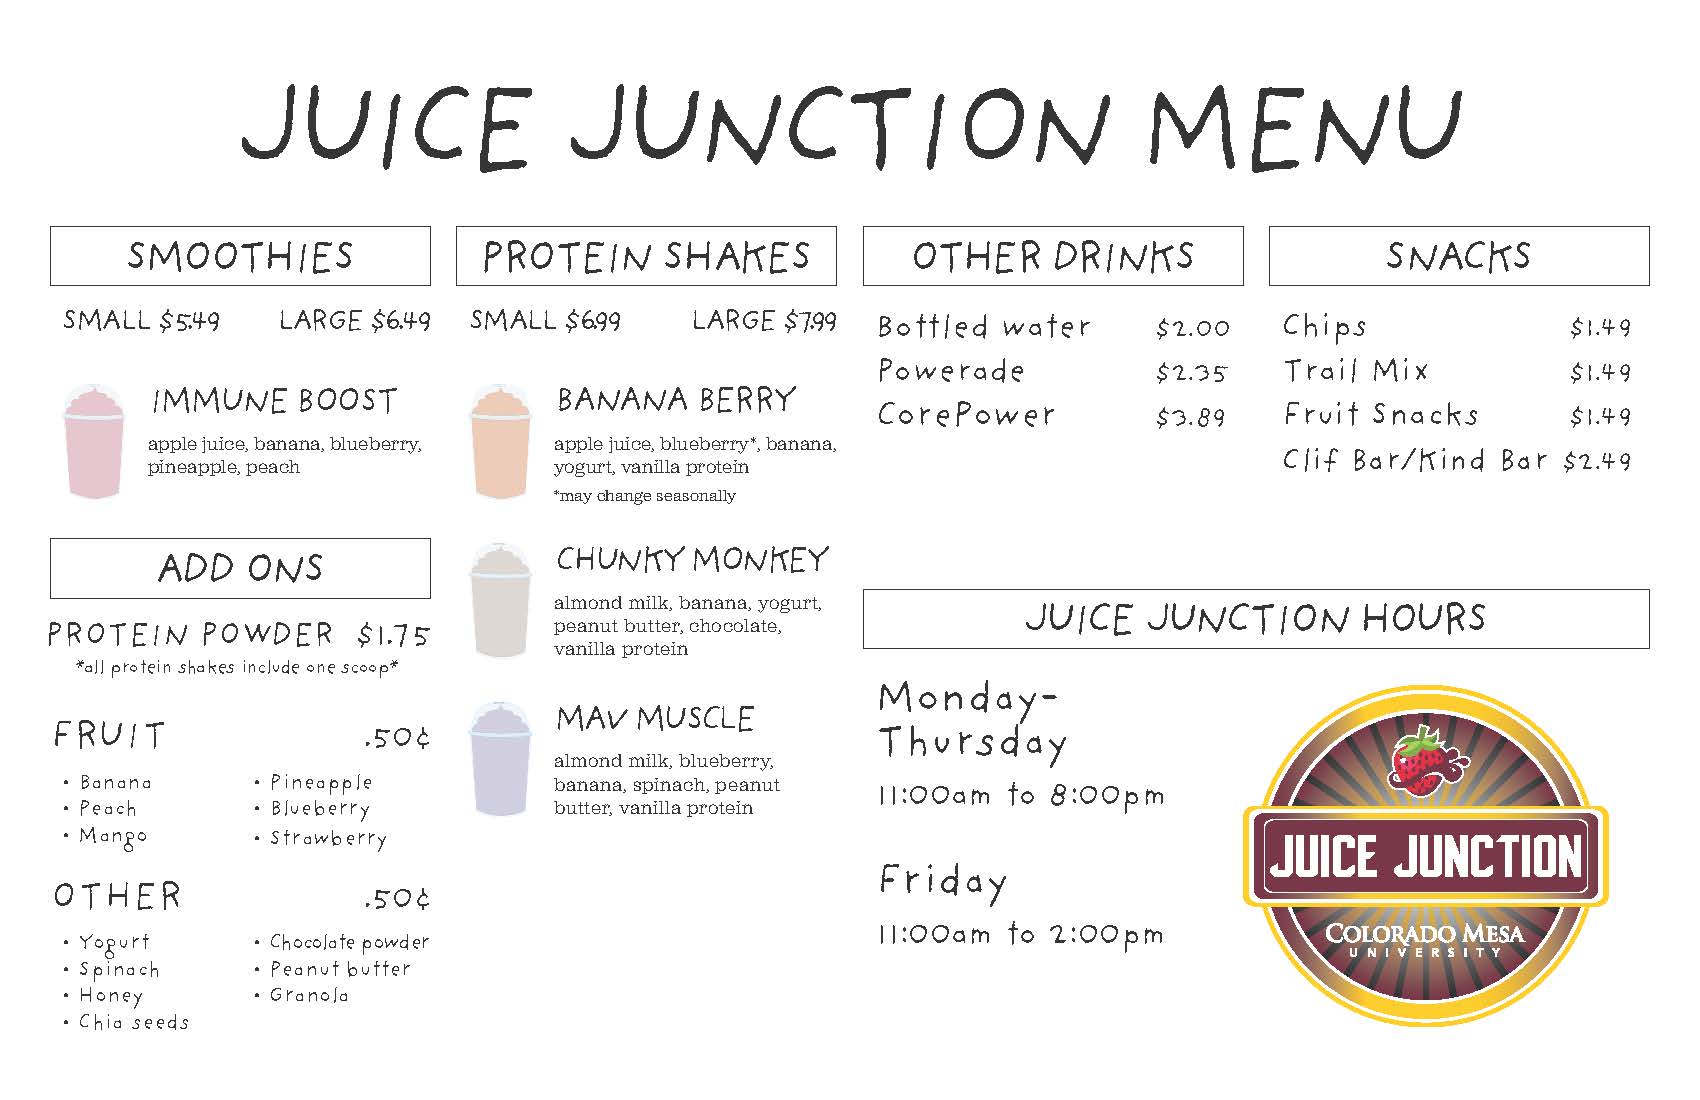 crs_juice-junction-menu_march_2122.jpg